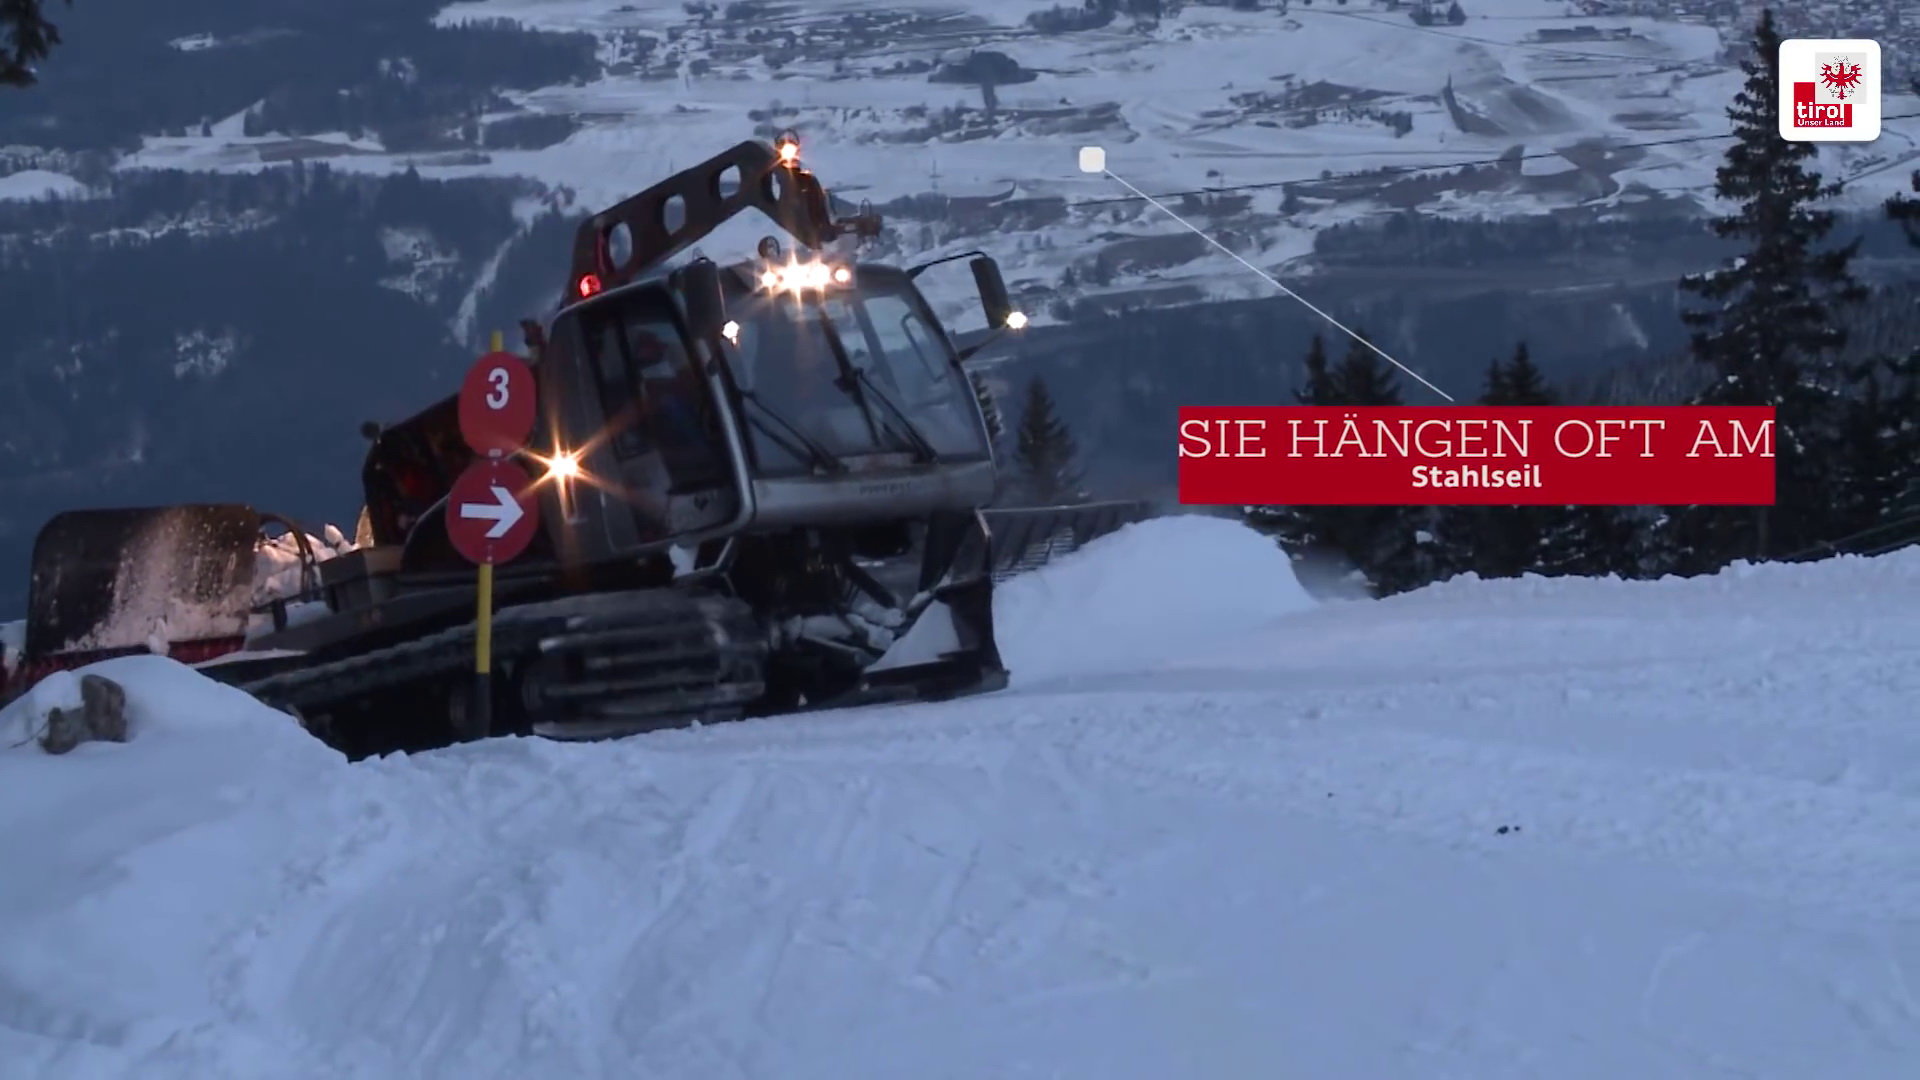 Kép: Tiroli kampányfilm az esti balesetek ellen